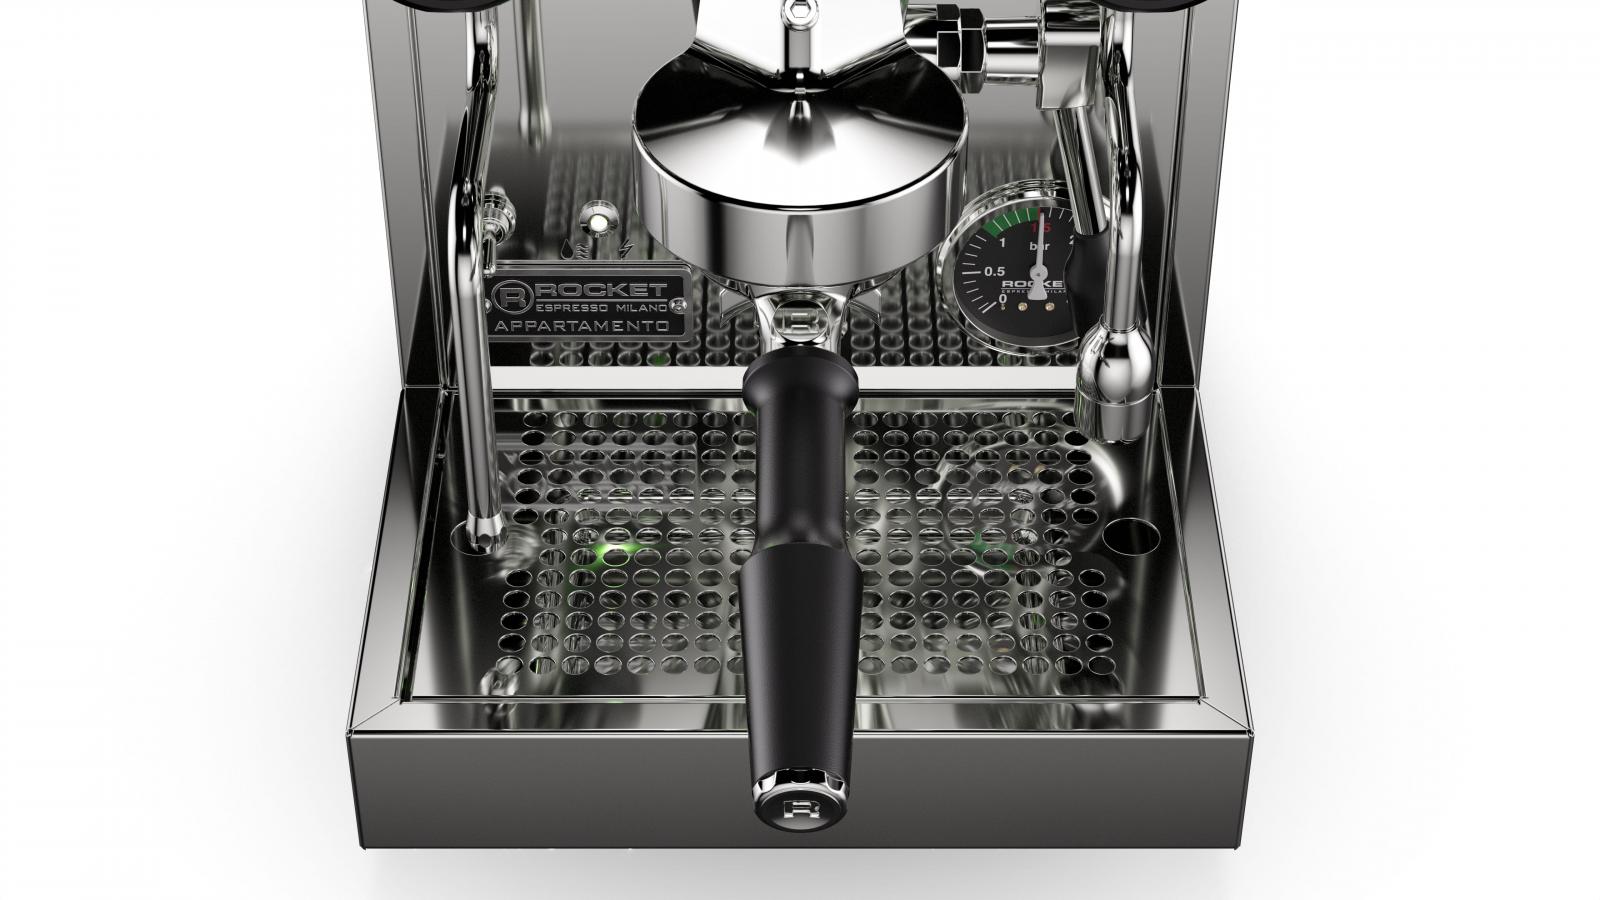 Máquina de café espresso Rocket Appartamento Nera Copper